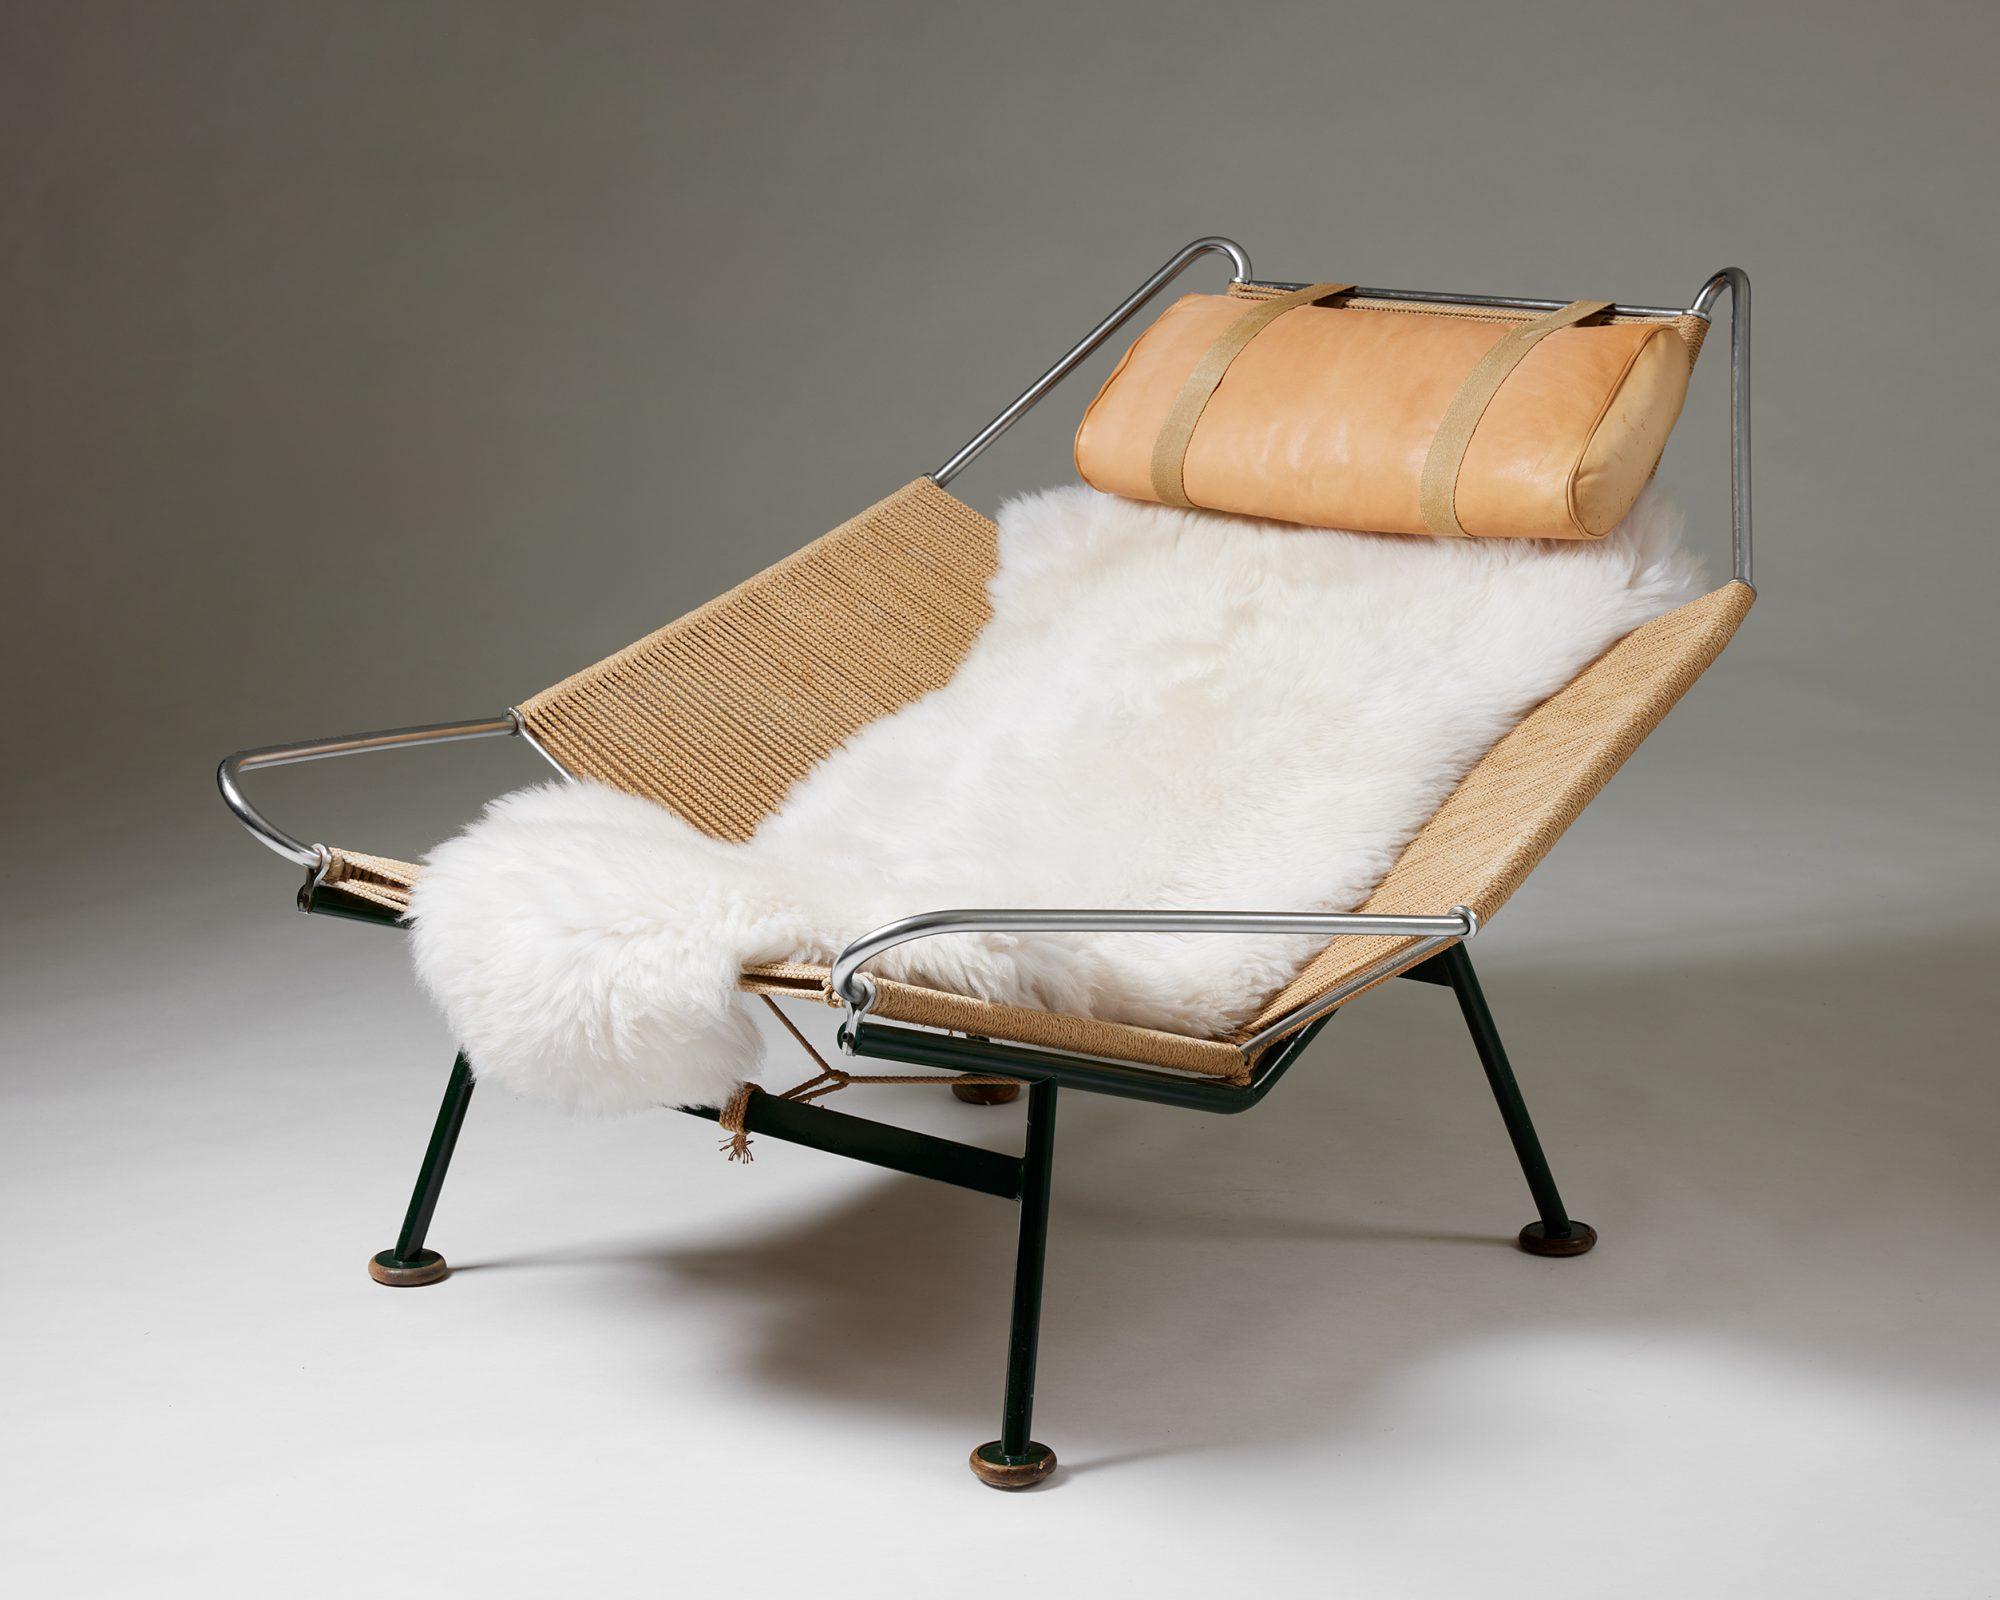 Der Flag Halyard Chair, entworfen von Hans J. Wegner für Getama,
Dänemark, 1950
Gestell aus lackiertem Stahl, 